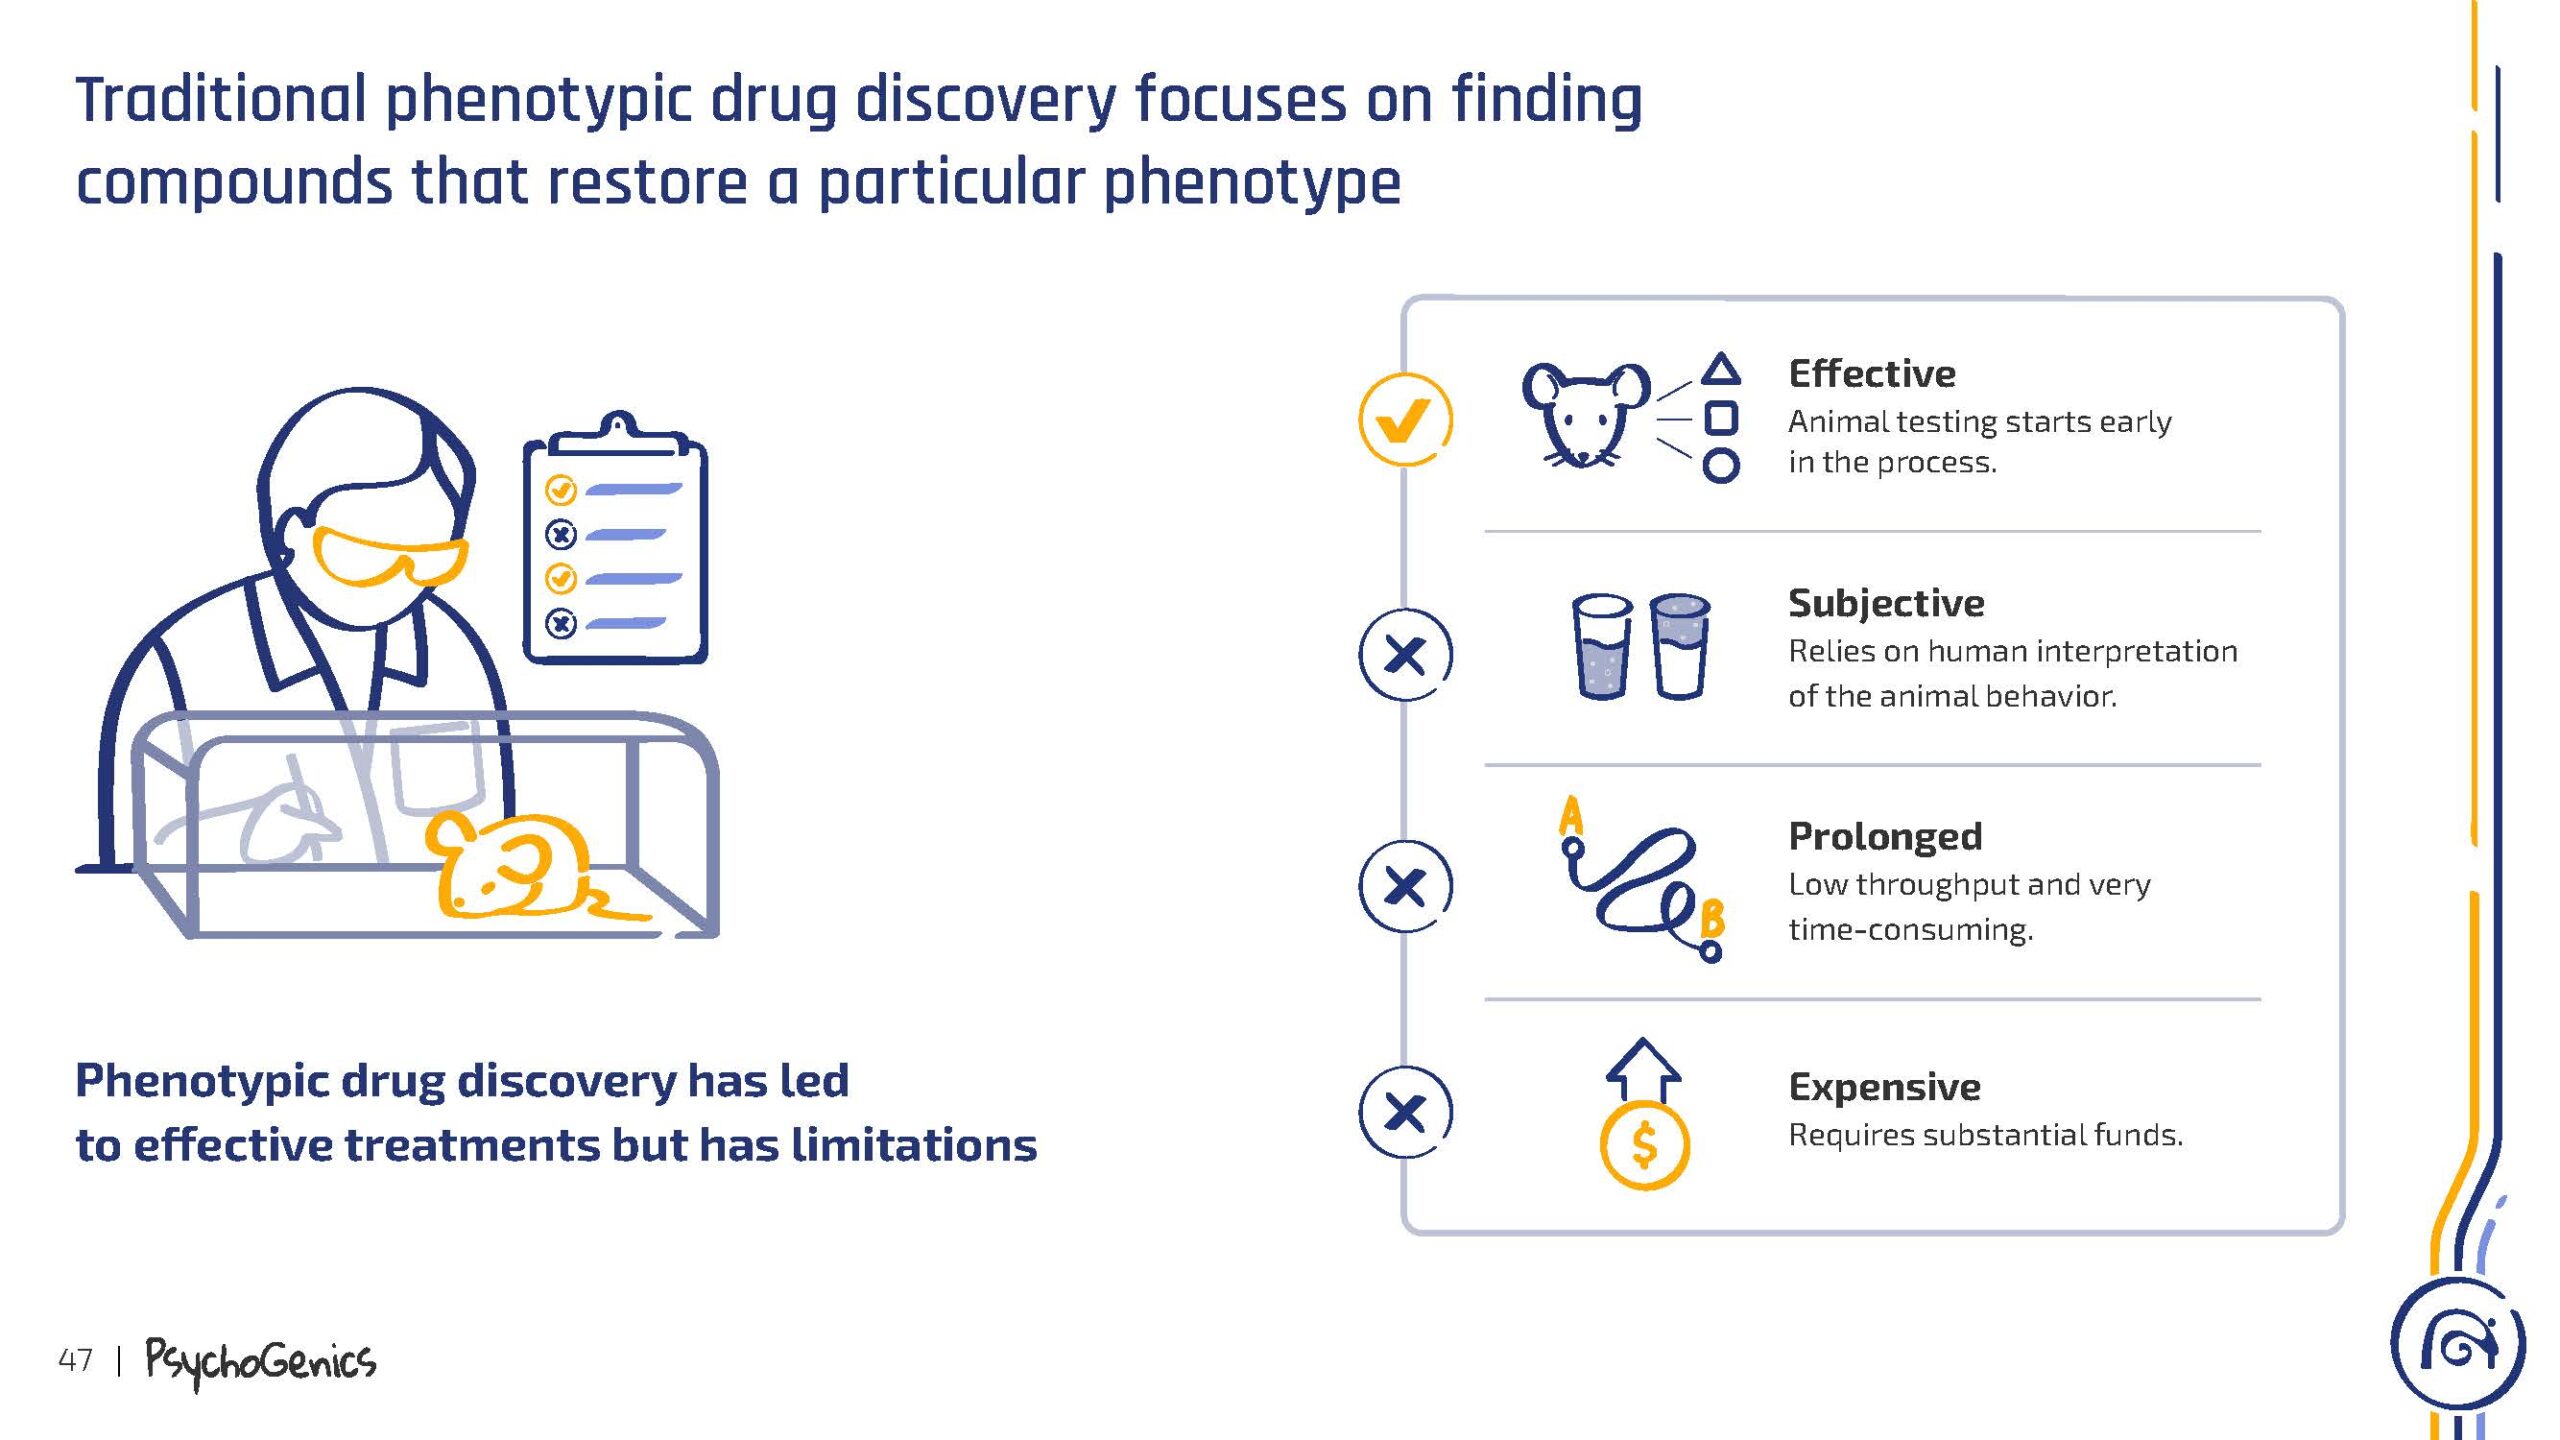 PsychoGenics-presentation_Phenotypic_drug_discovery